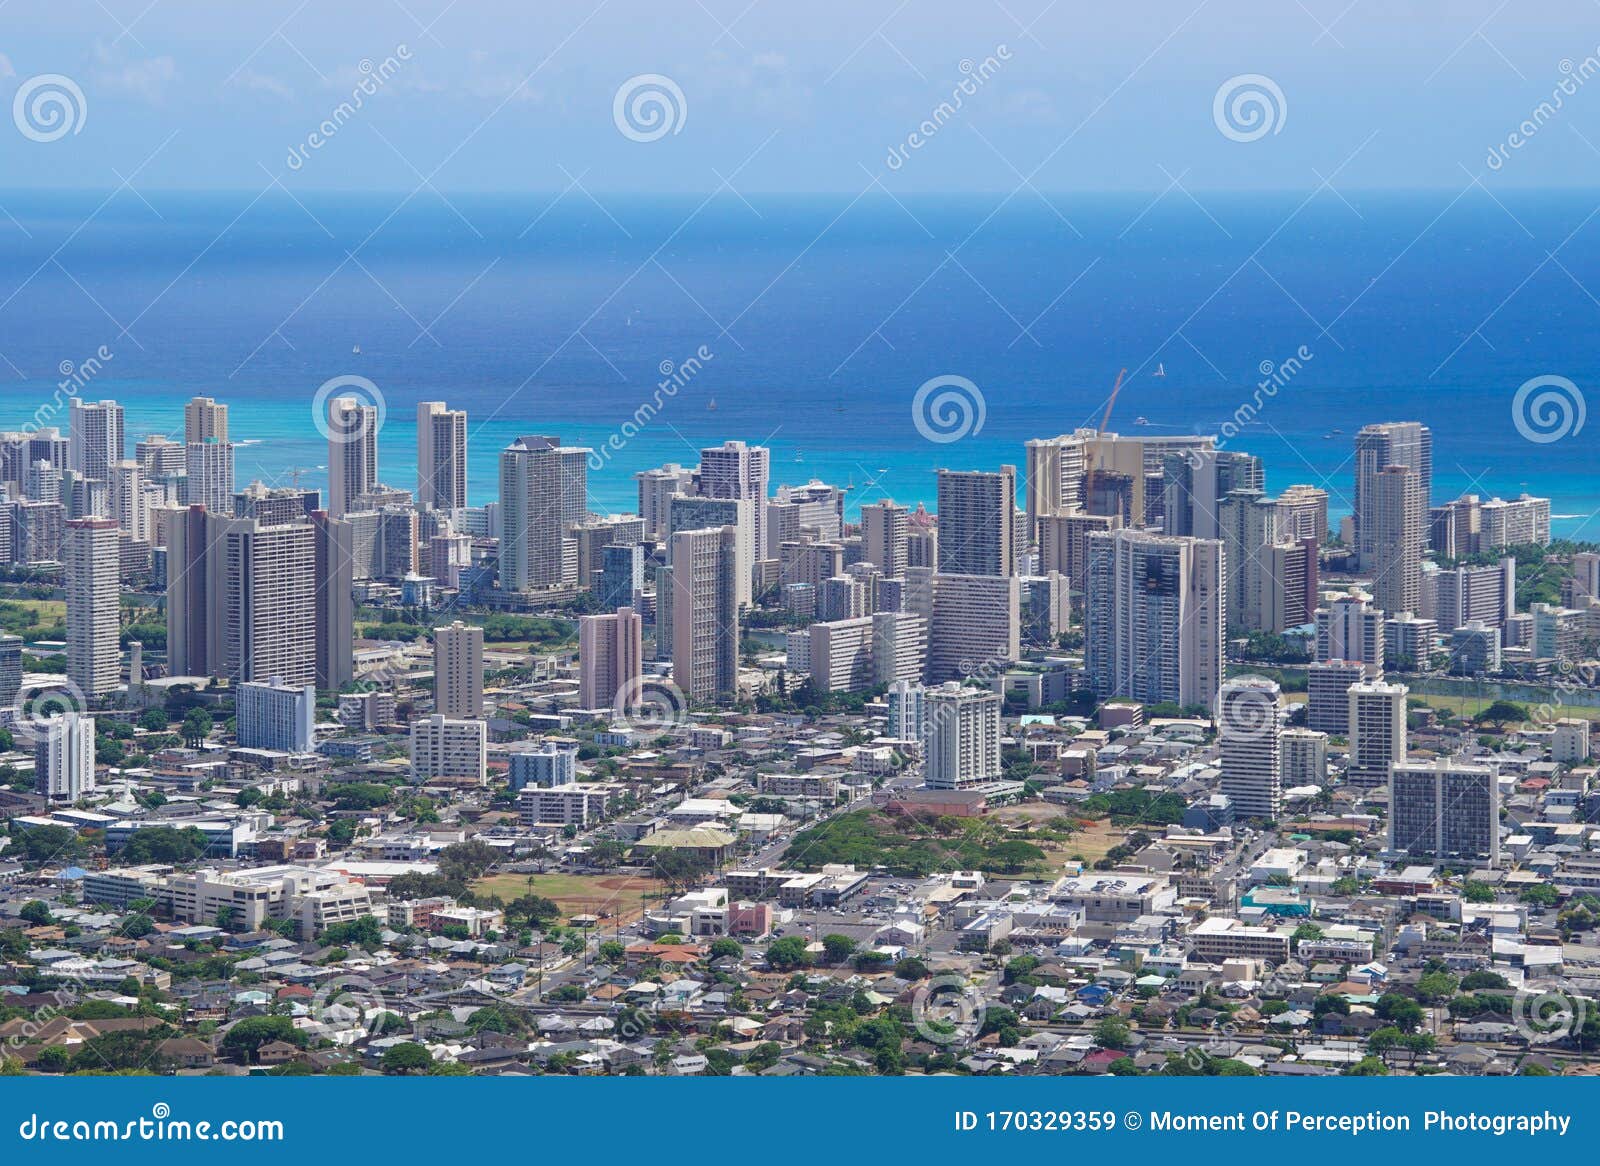 Birds Eye View Of Downtown Honolulu Hawaii Stock Image Image Of